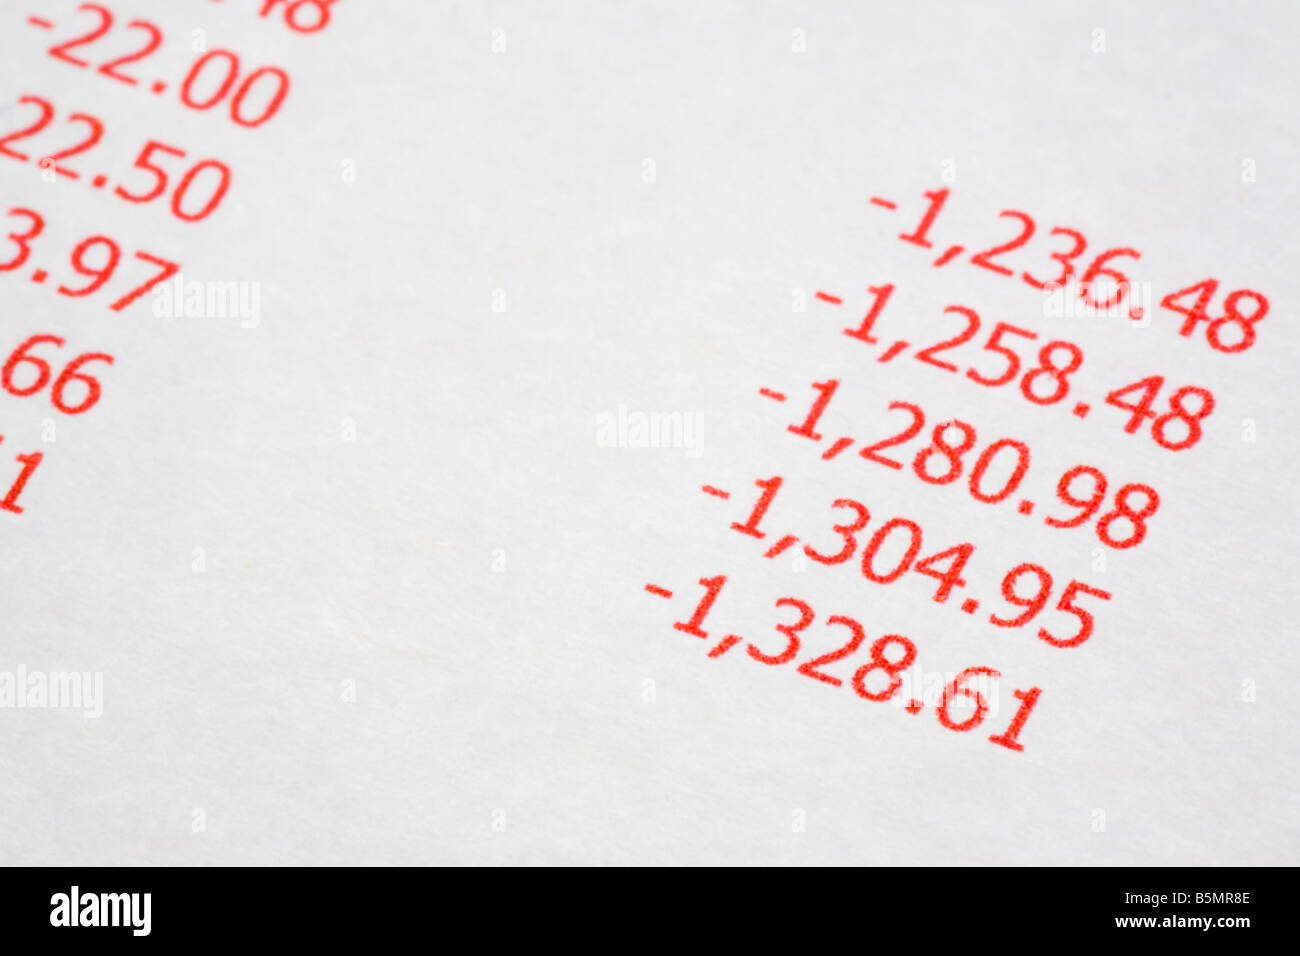 Dichiarazione con grande equilibrio negativo che mostra un fido debito in rosso di esecuzione di bilancio. Inghilterra Regno Unito Gran Bretagna Foto Stock